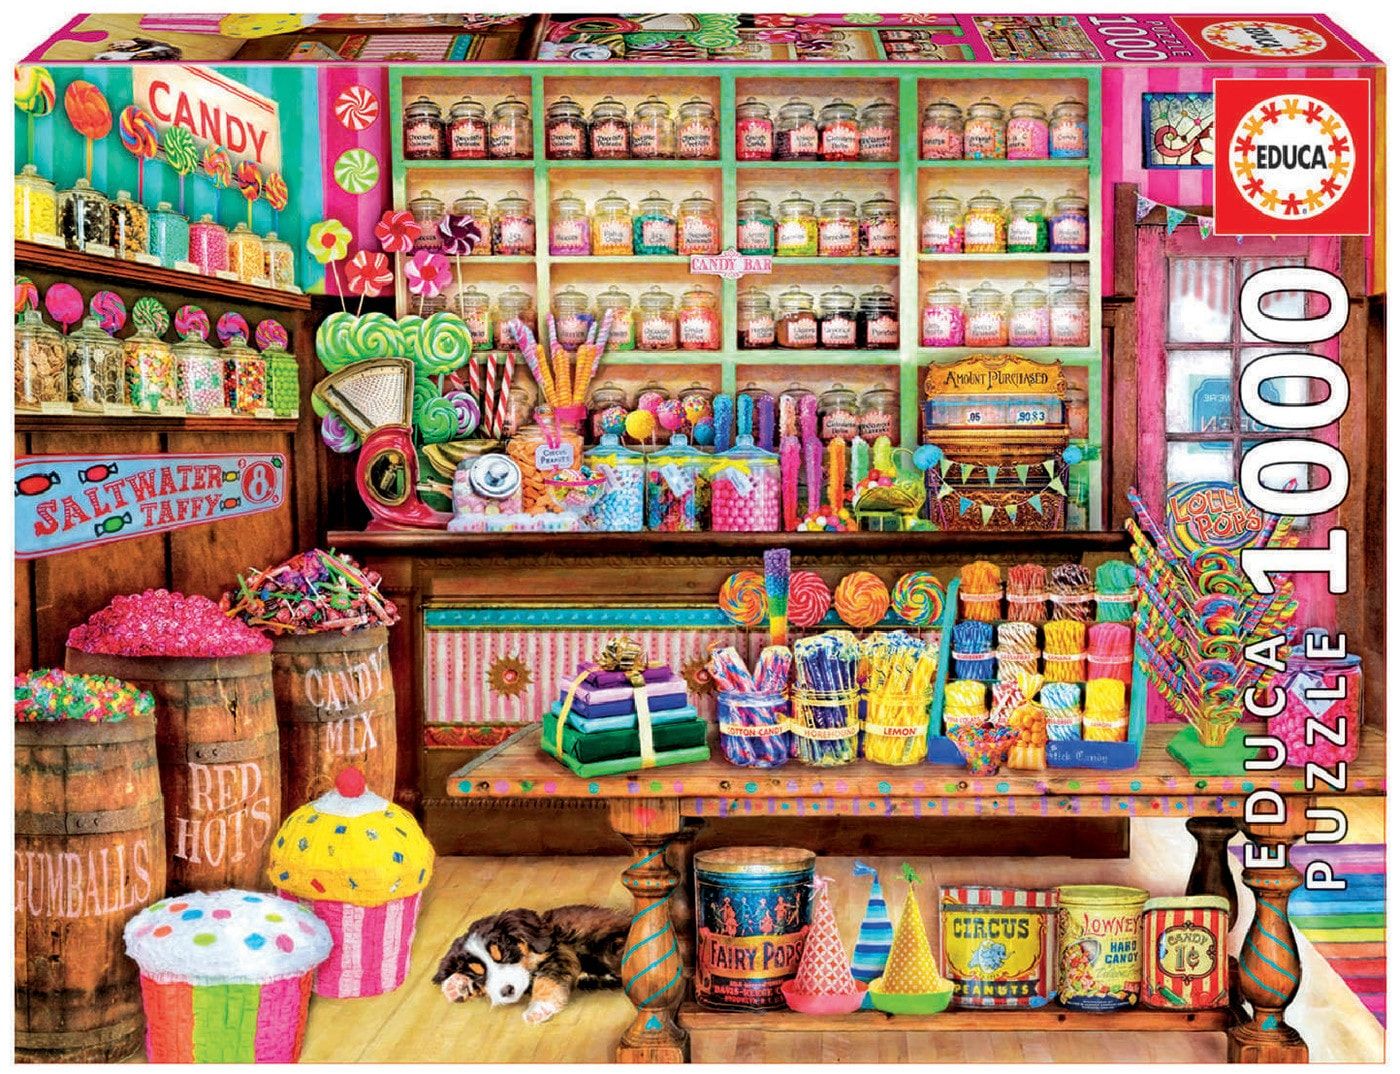 Candy shop junior charles. Candy Candy shop магазин сладостей. Сладости для детей. Сладости магазинные. Витрина магазина сладостей.